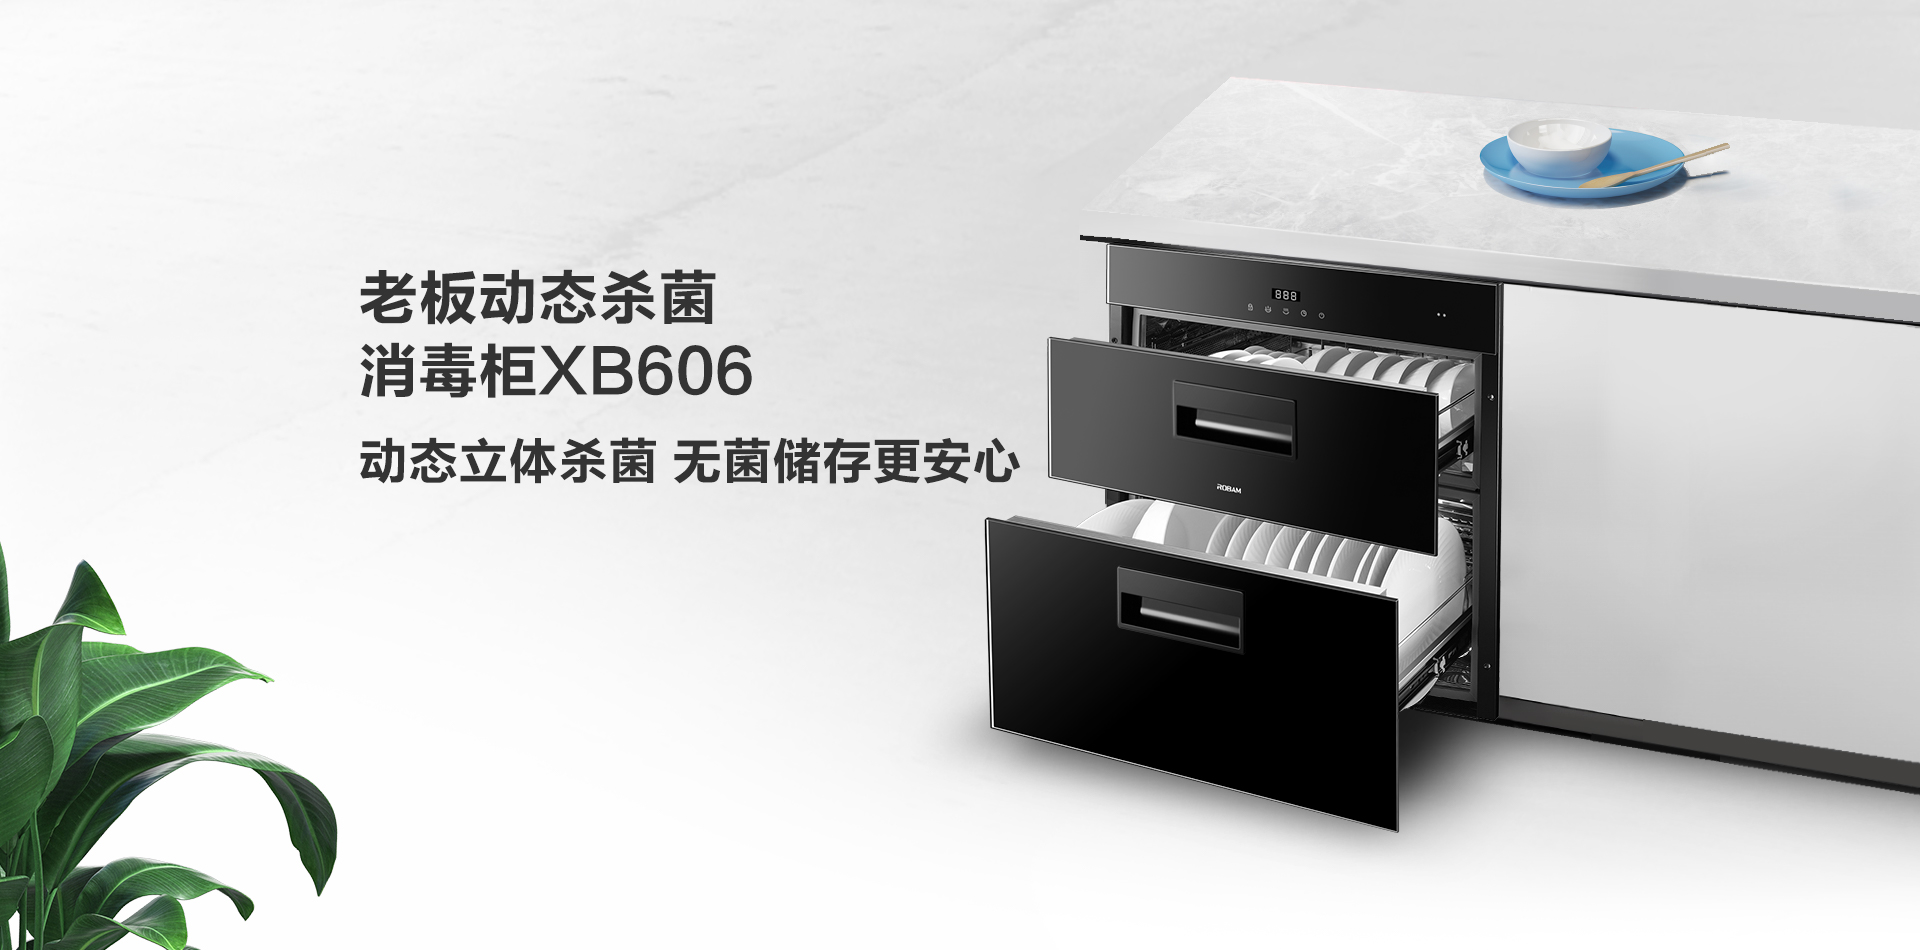 XB606消毒柜-上新-PC端-210719_01.png